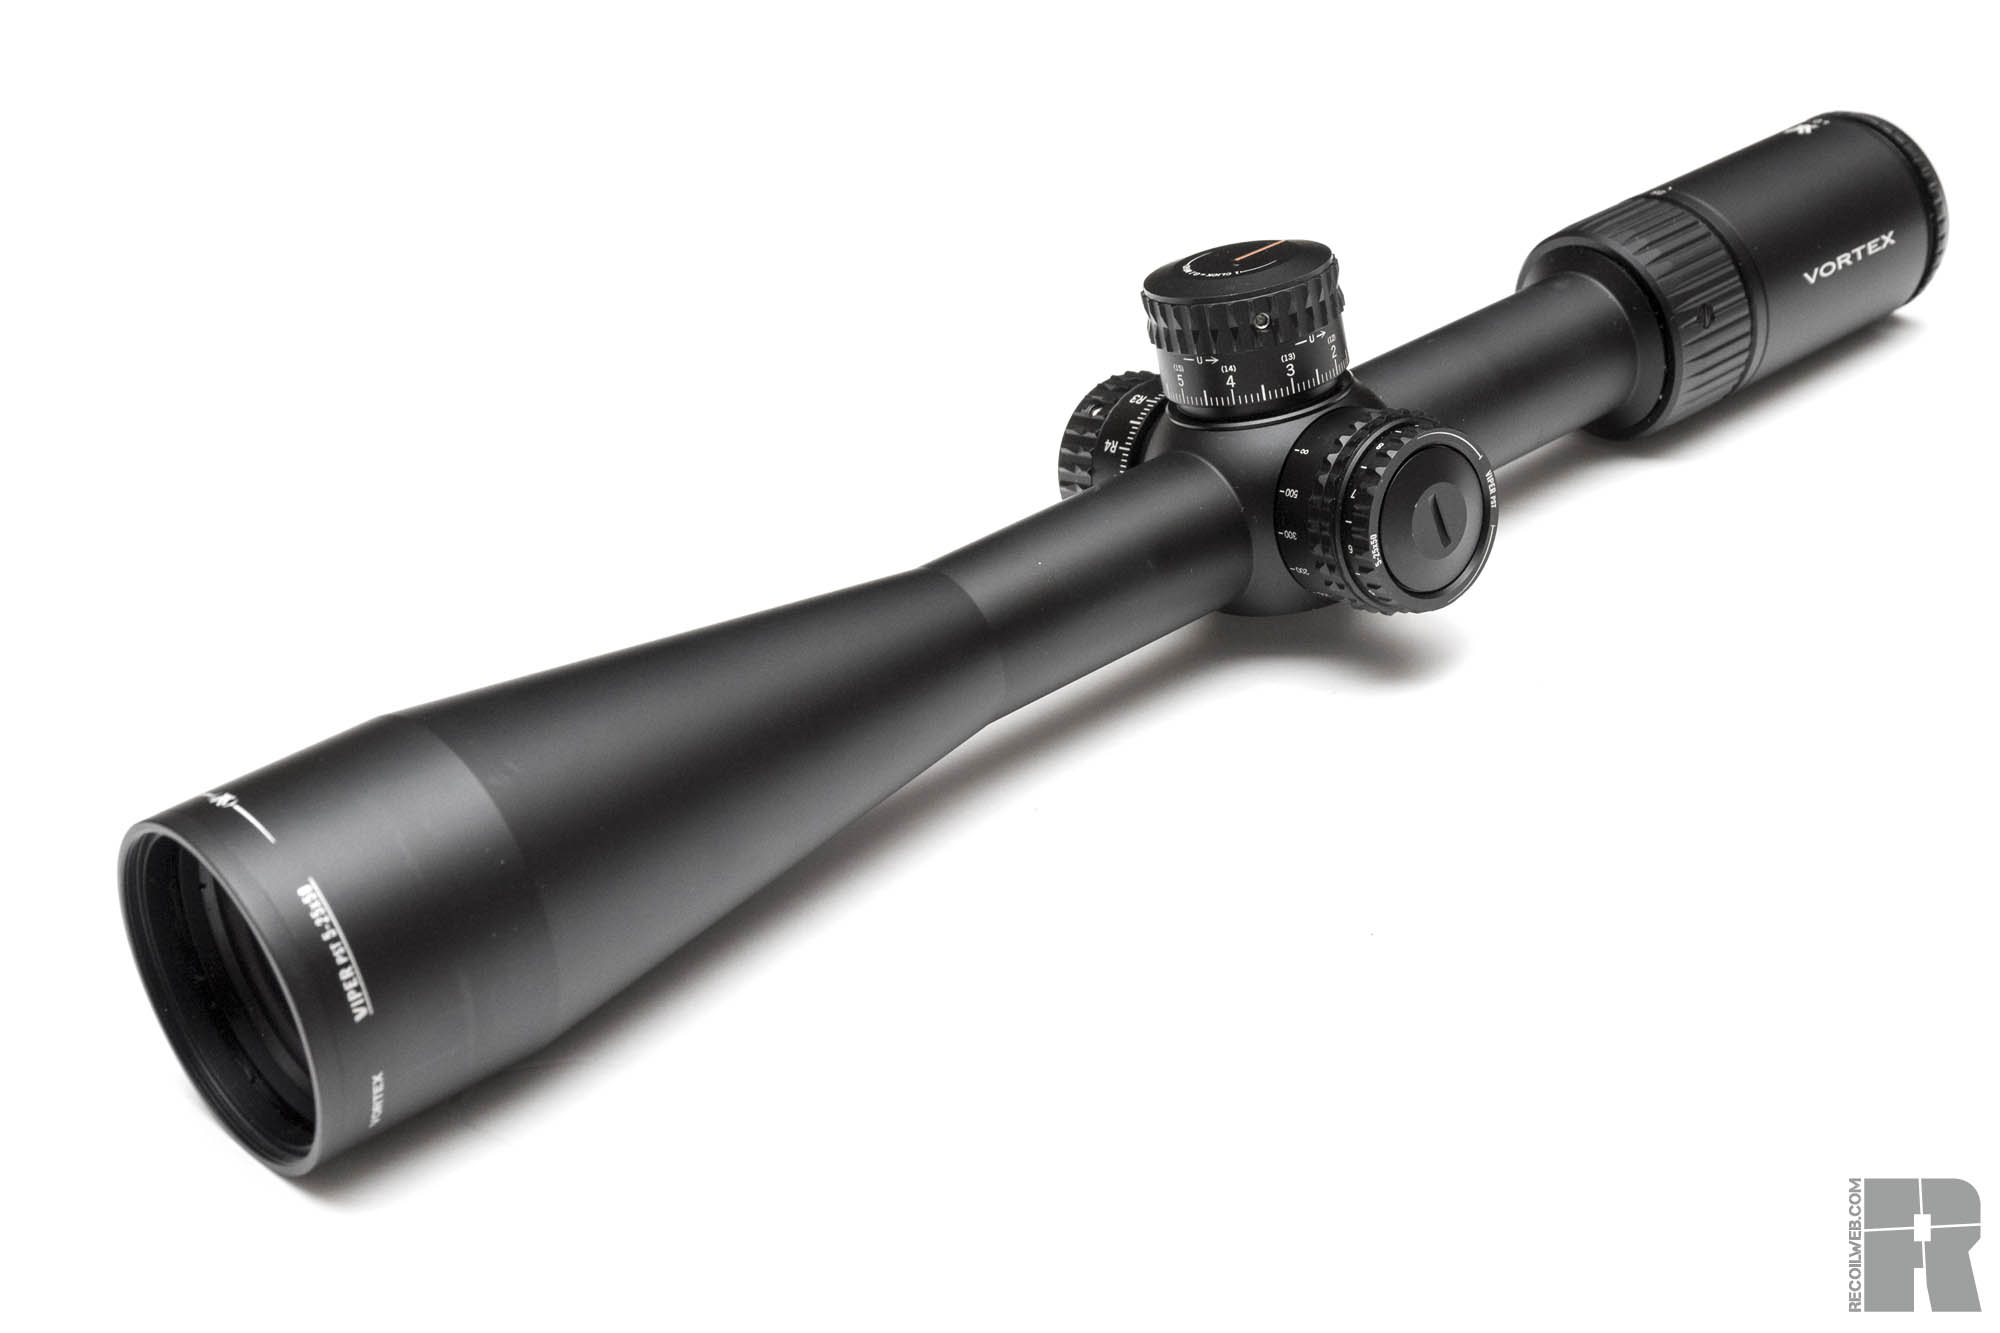 Vortex Viper PST 5-25x rifle scopes